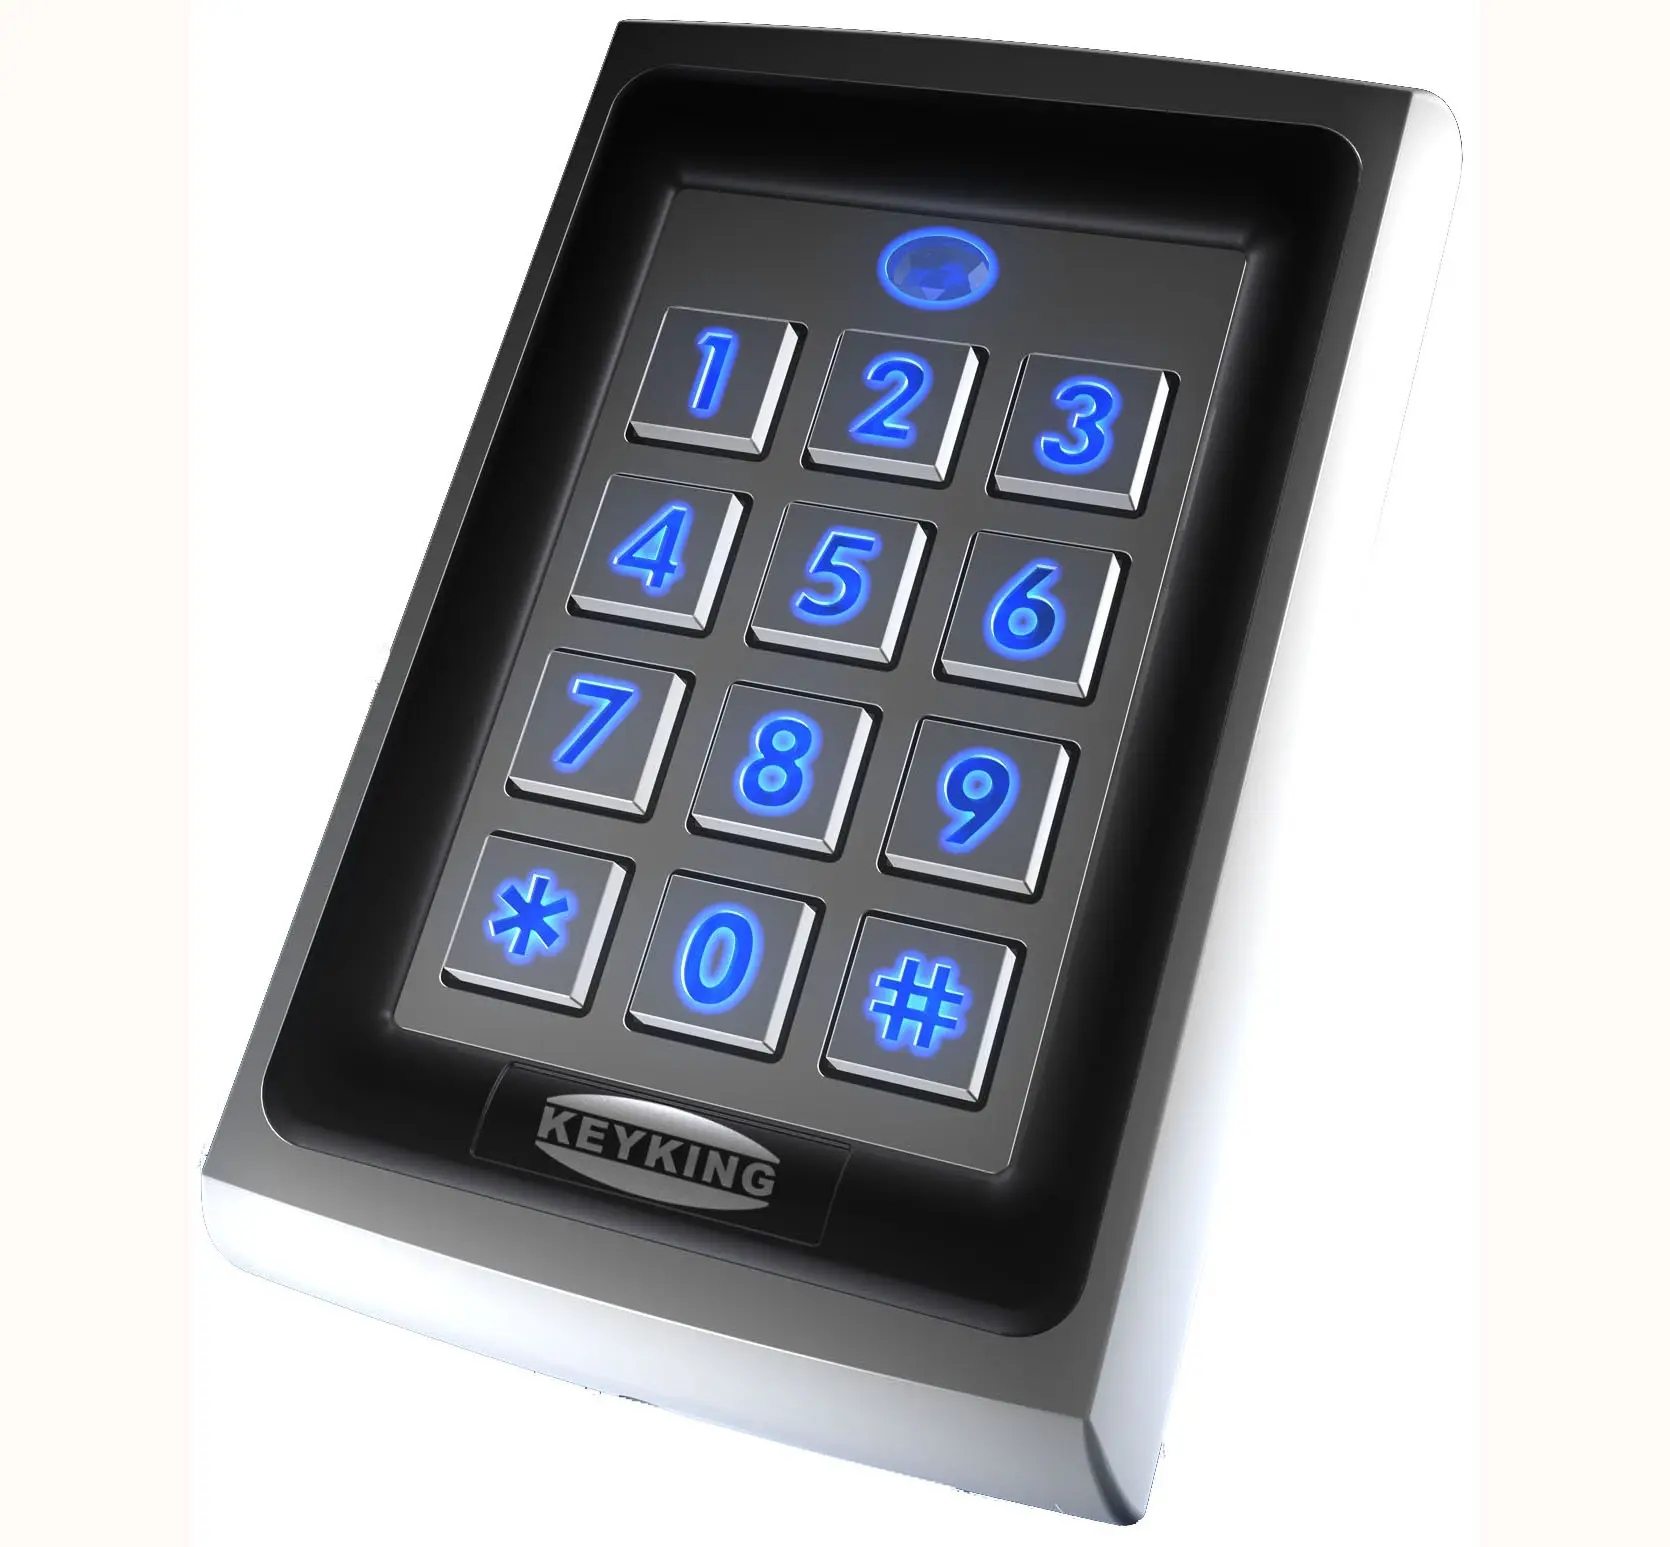 Keyking आपूर्ति दरवाजा अभिगम नियंत्रण प्रणाली के साथ आरएफआईडी कार्ड रीडर कीपैड